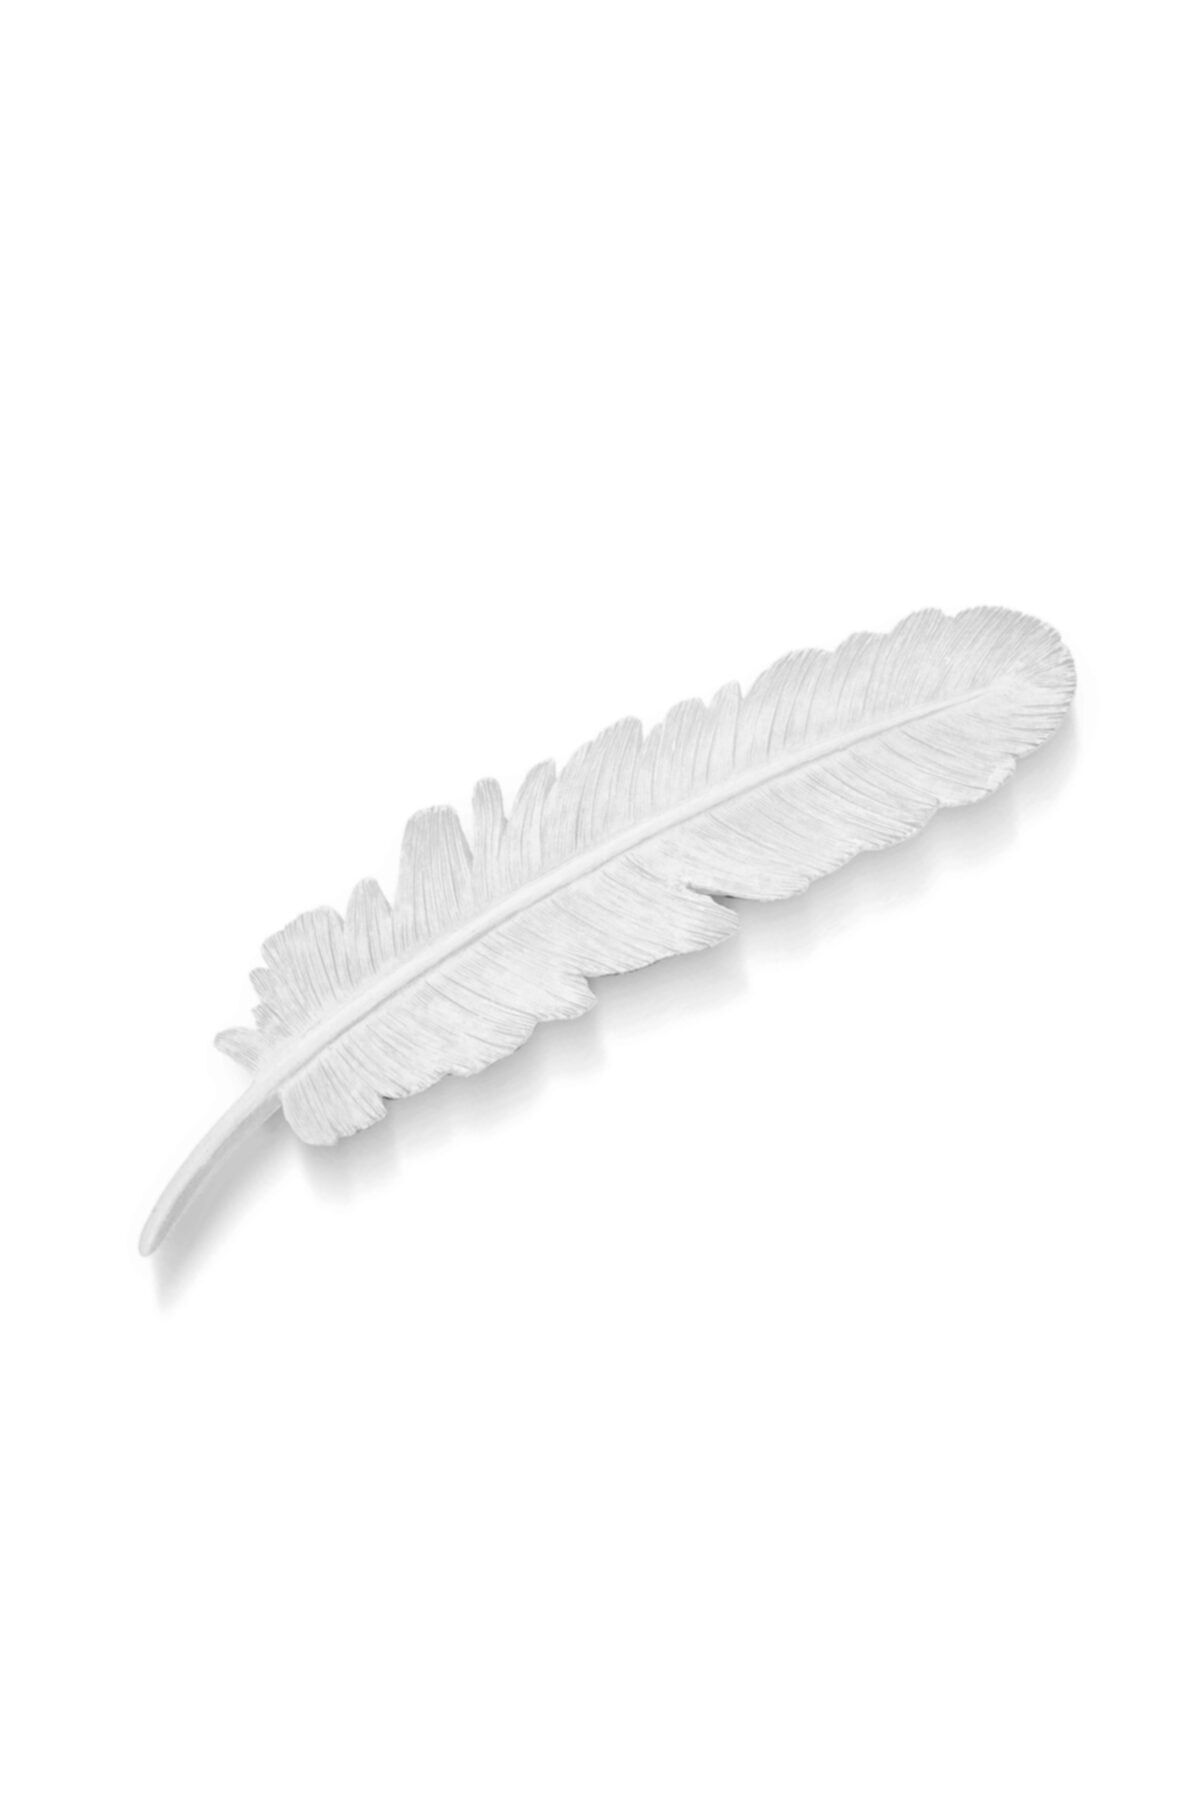 The Mia Dekor  Kuş Tüyü Beyaz - 30 Cm